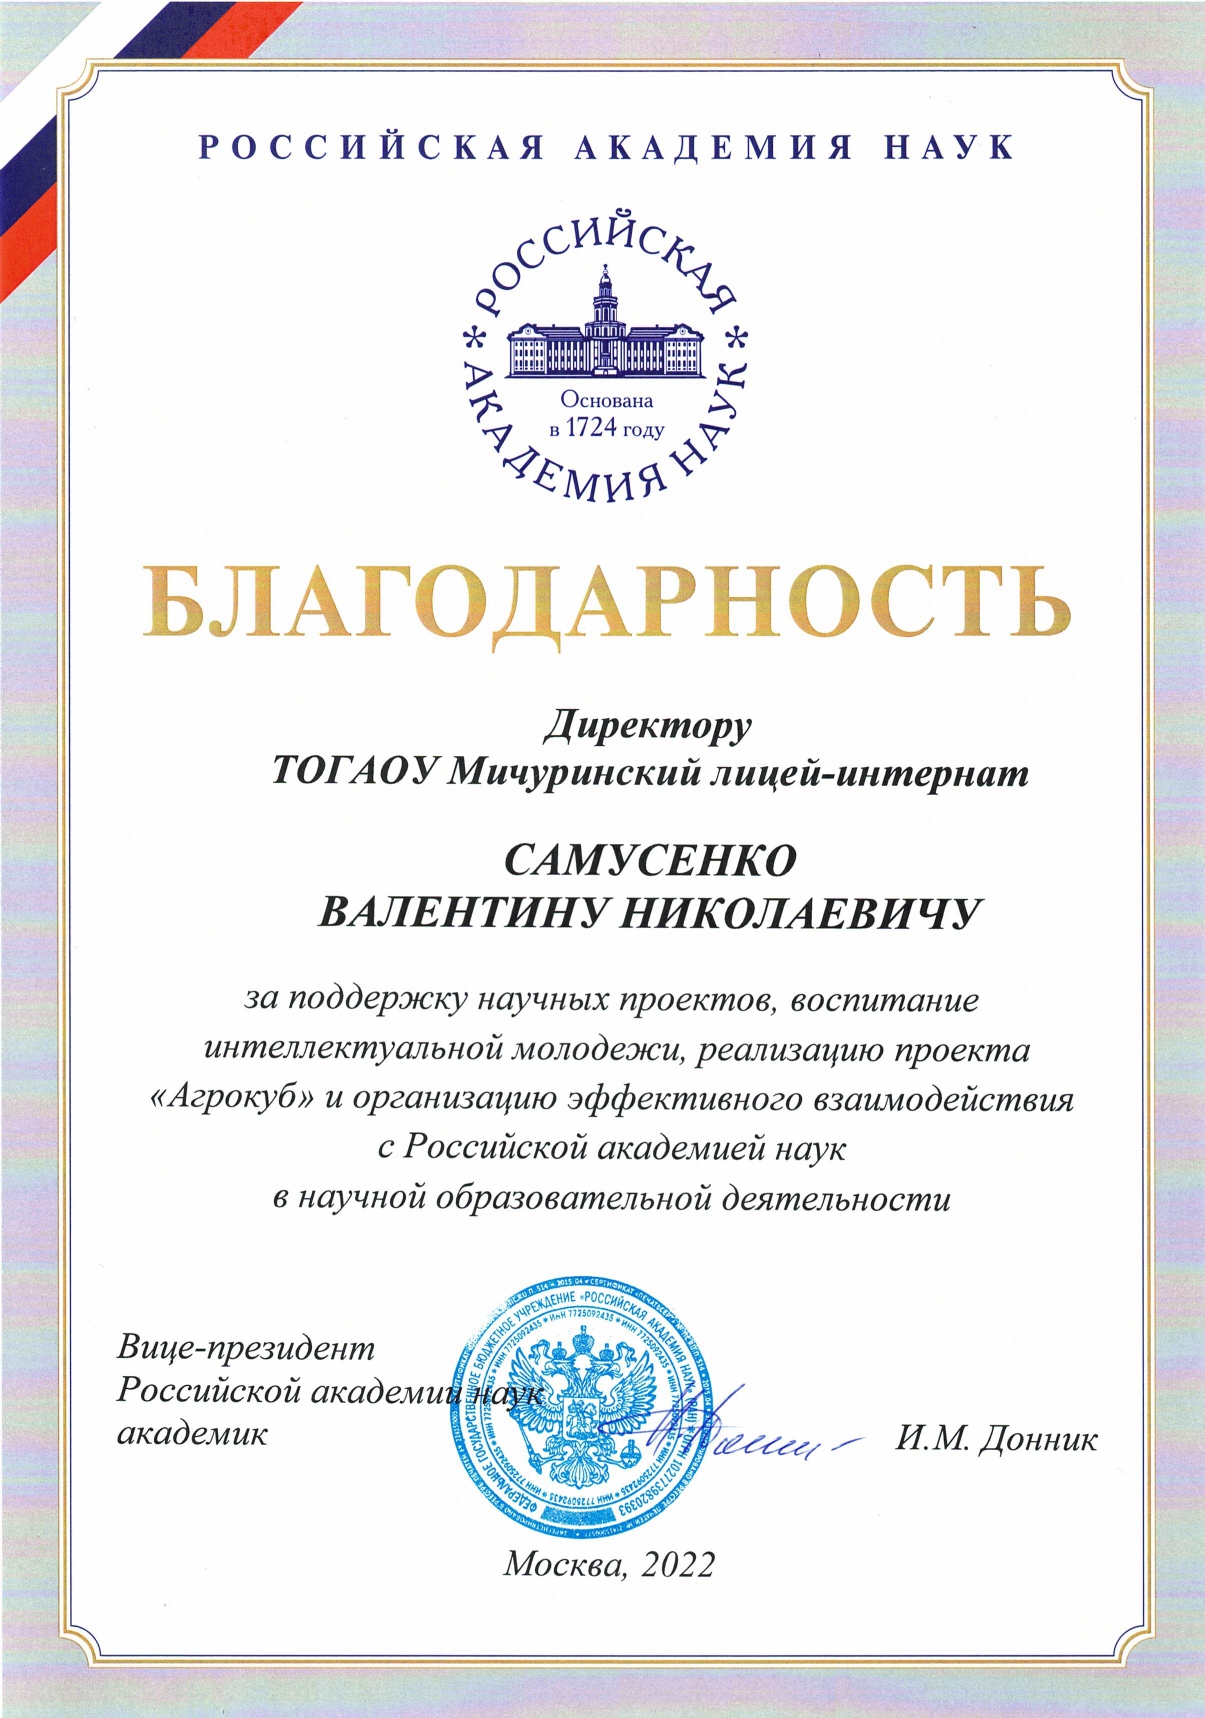 Благодарность от Российской академии наук